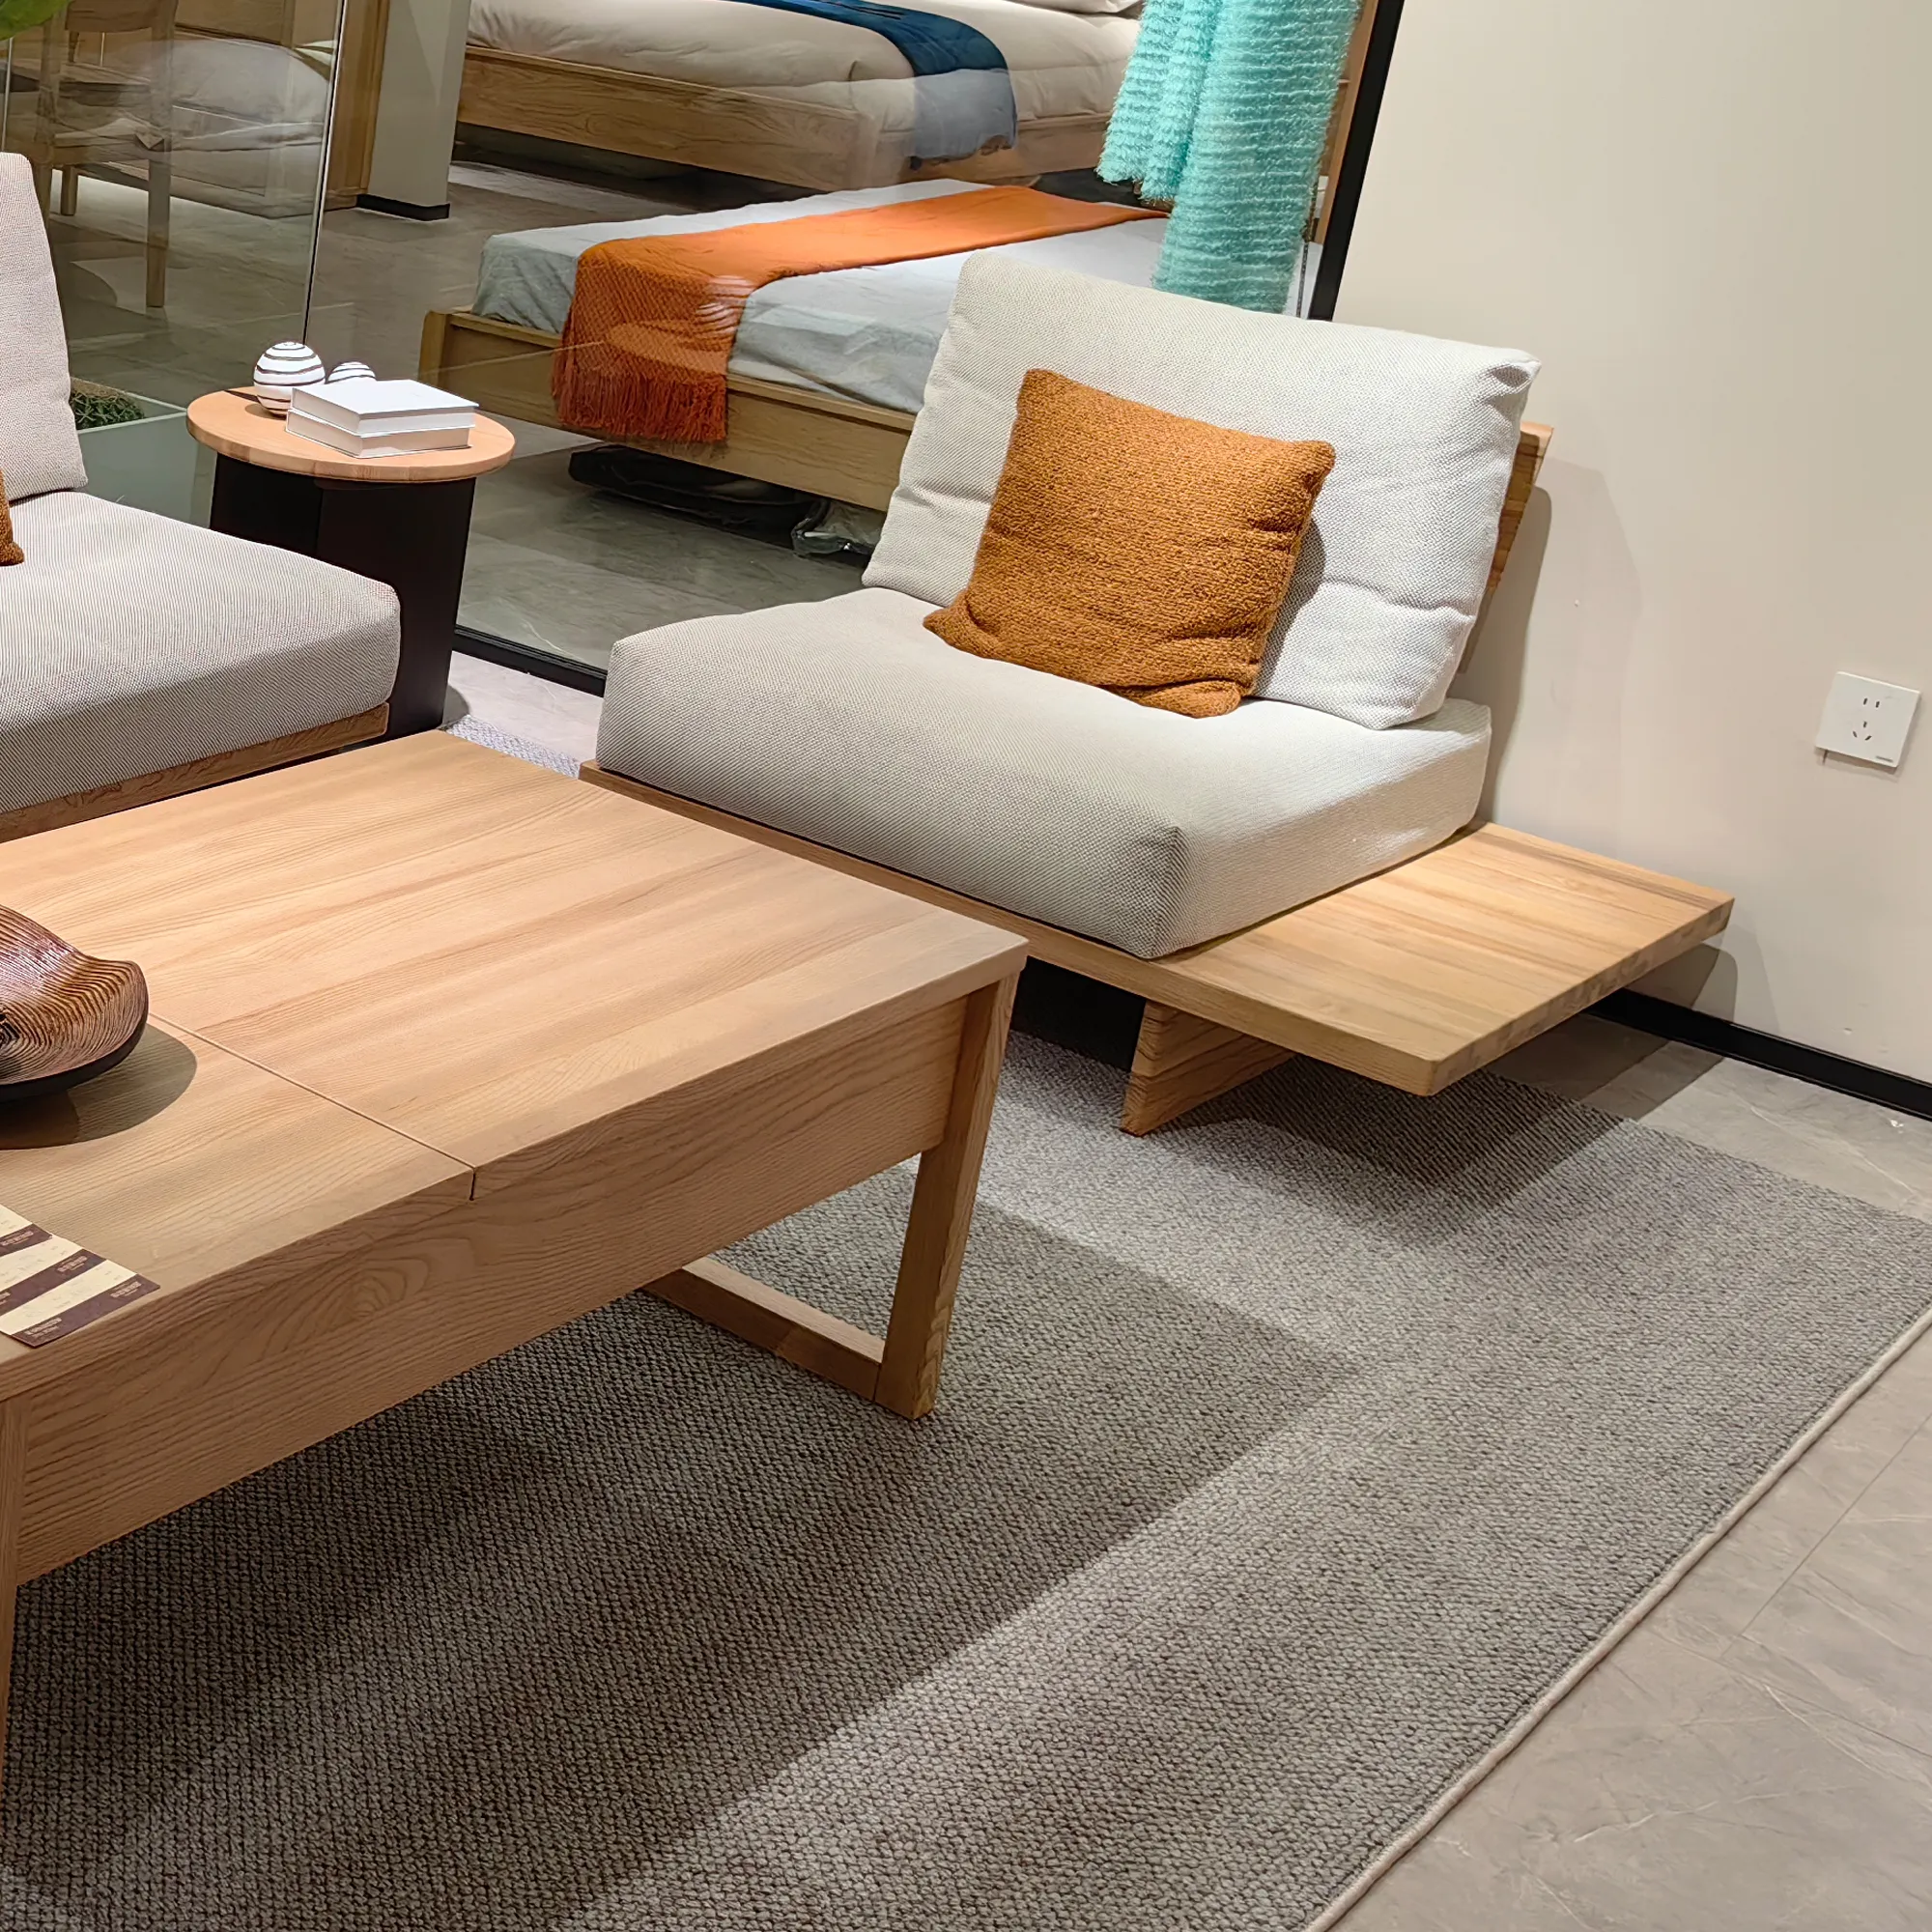 Olid-Conjunto de sofás con marco de madera de Fresno, 1 + 2 + 3 Floor bajo emoAstyle style estilo uton, cojines de piel de invierno y verano multifuncionales